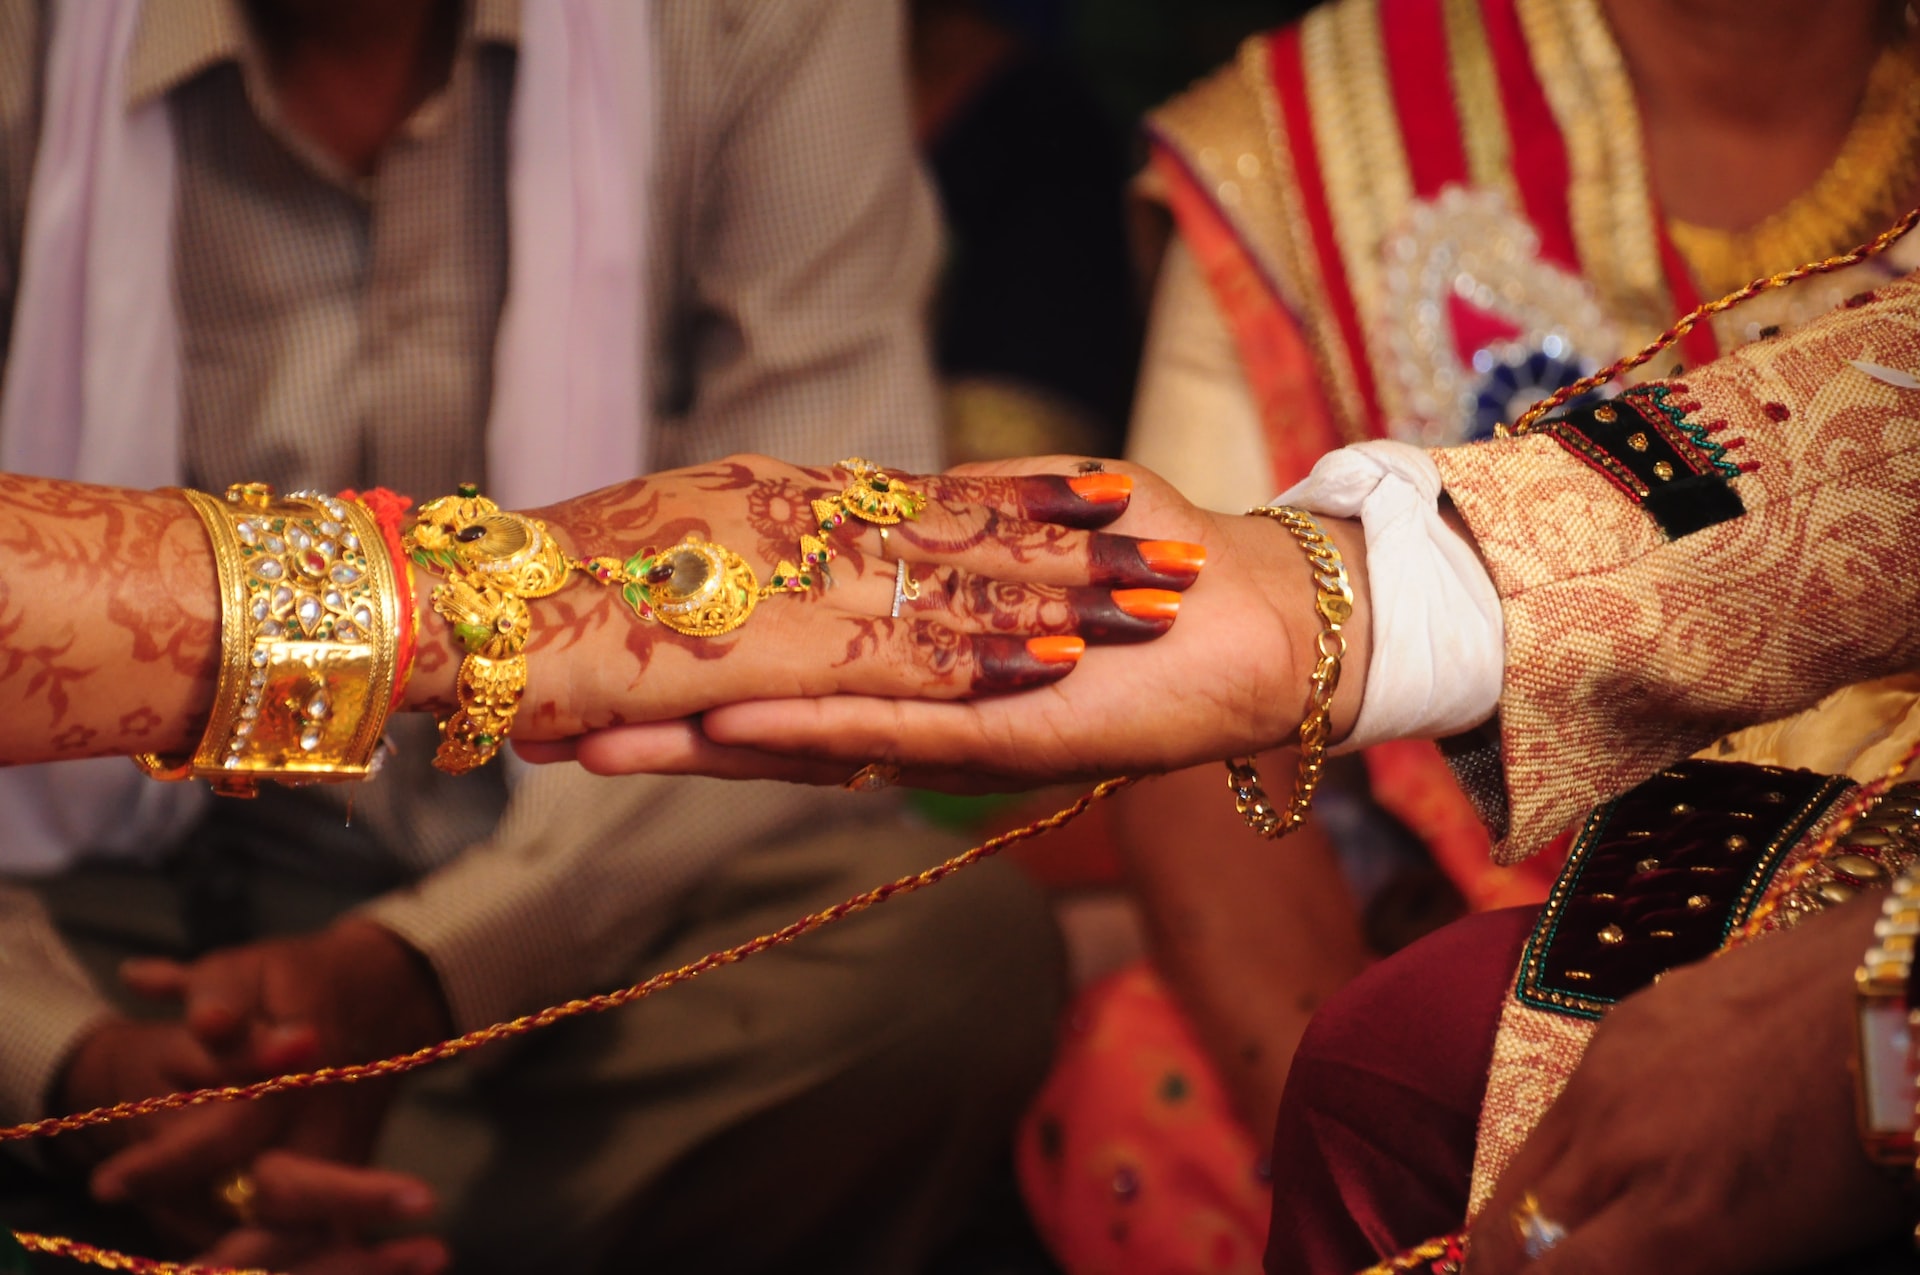 hands of India wedding couple